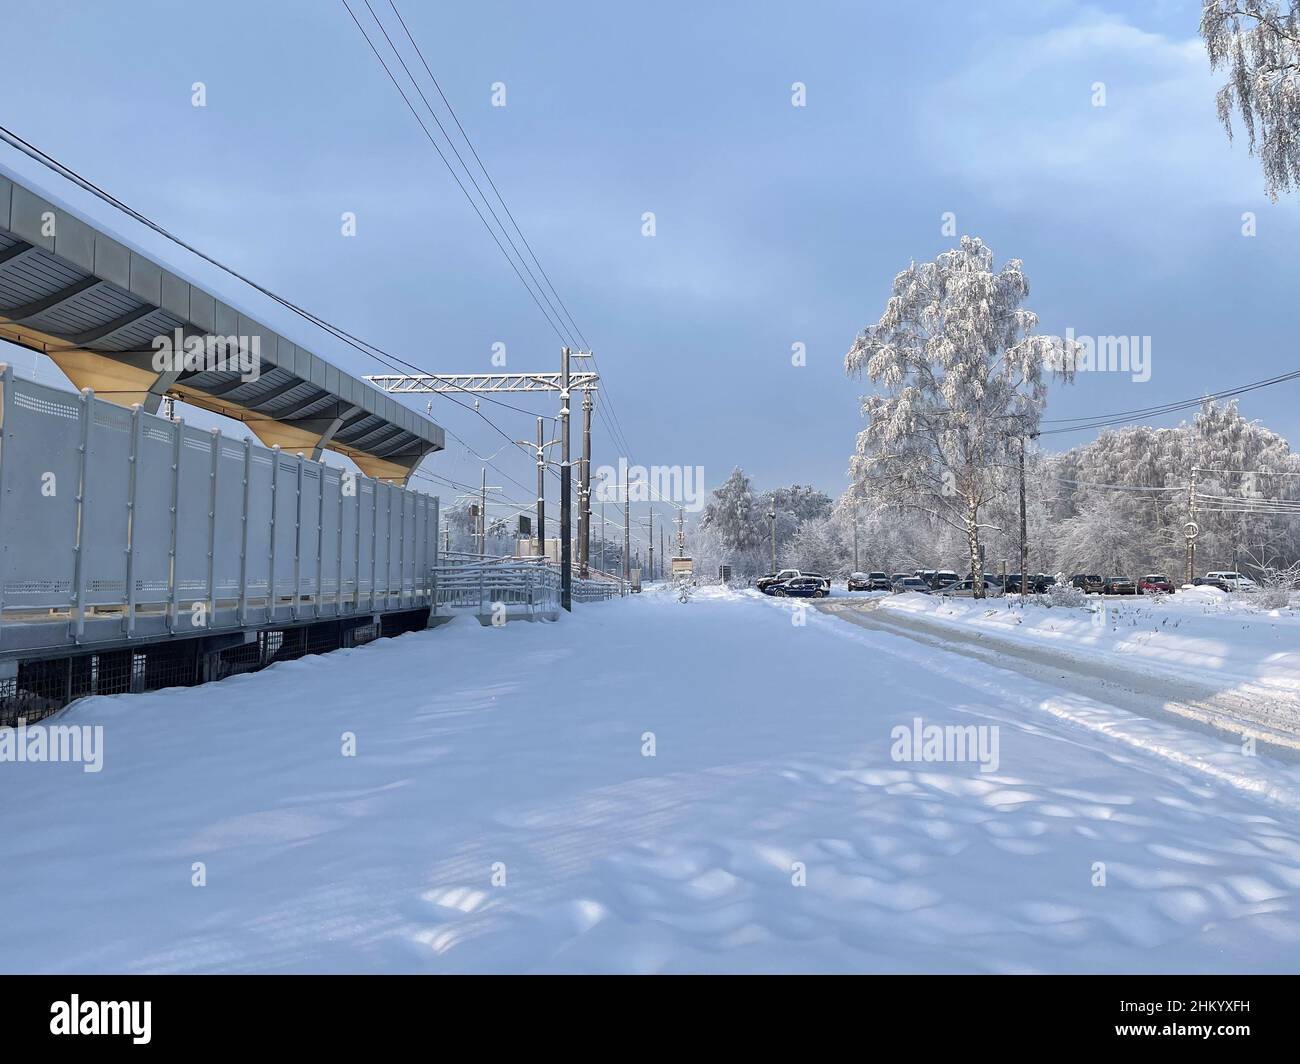 Piattaforma ferroviaria vuota senza passeggeri in inverno al tramonto. Ferrovia, concetto di clima freddo, fuoco selettivo e softfocus Foto Stock